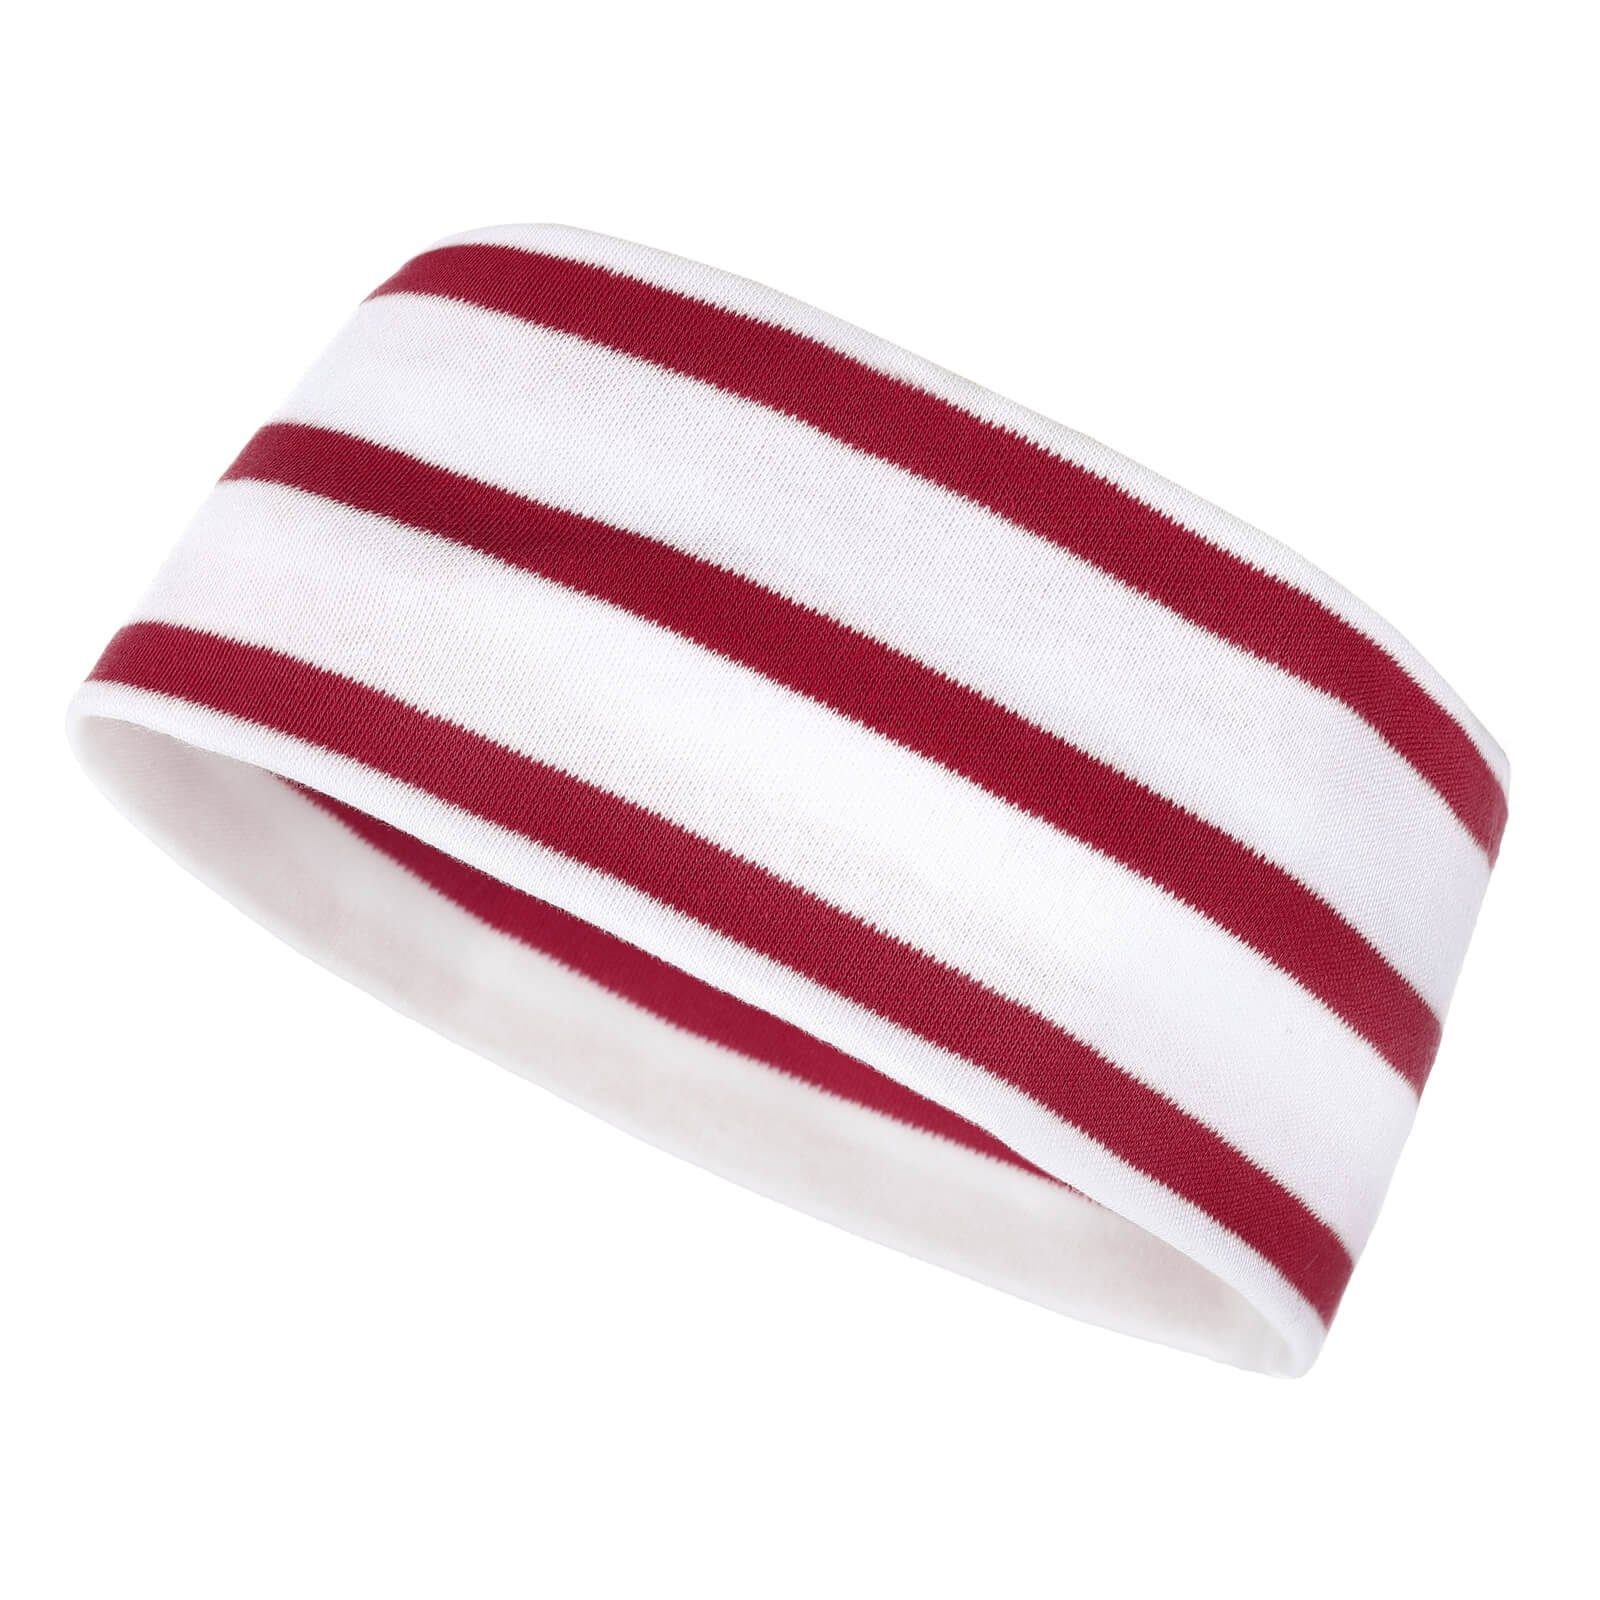 modAS Stirnband Unisex Kopfband Maritim für Kinder und Erwachsene zweilagig Baumwolle (03) weiß / rot